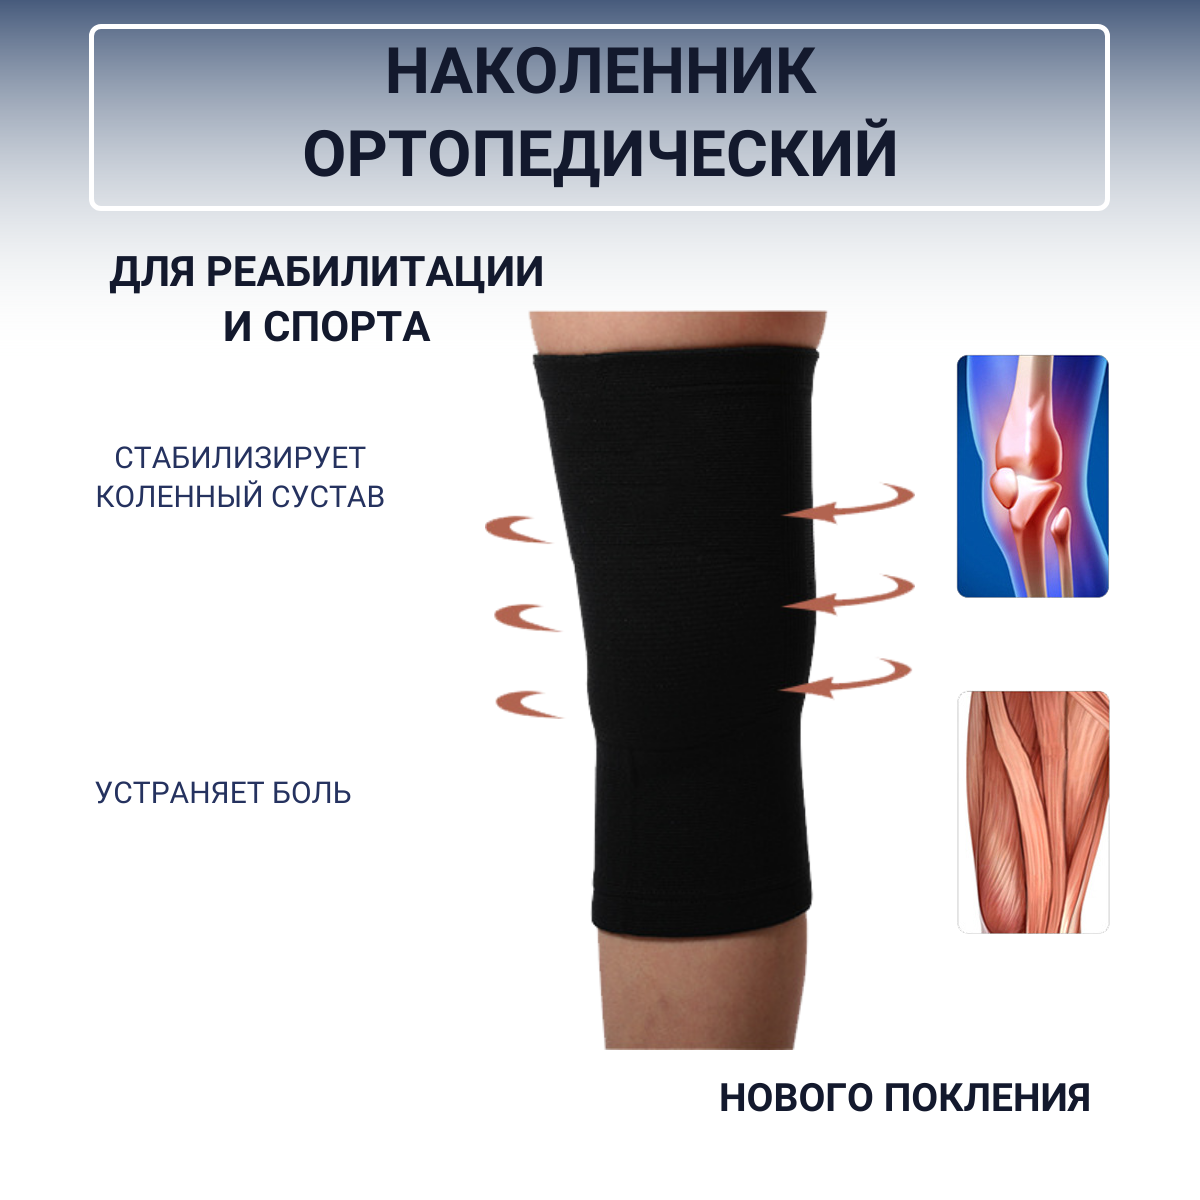 "Наколенник Ортопедический" - 2 штуки, бандаж для коленного сустава, спортивный